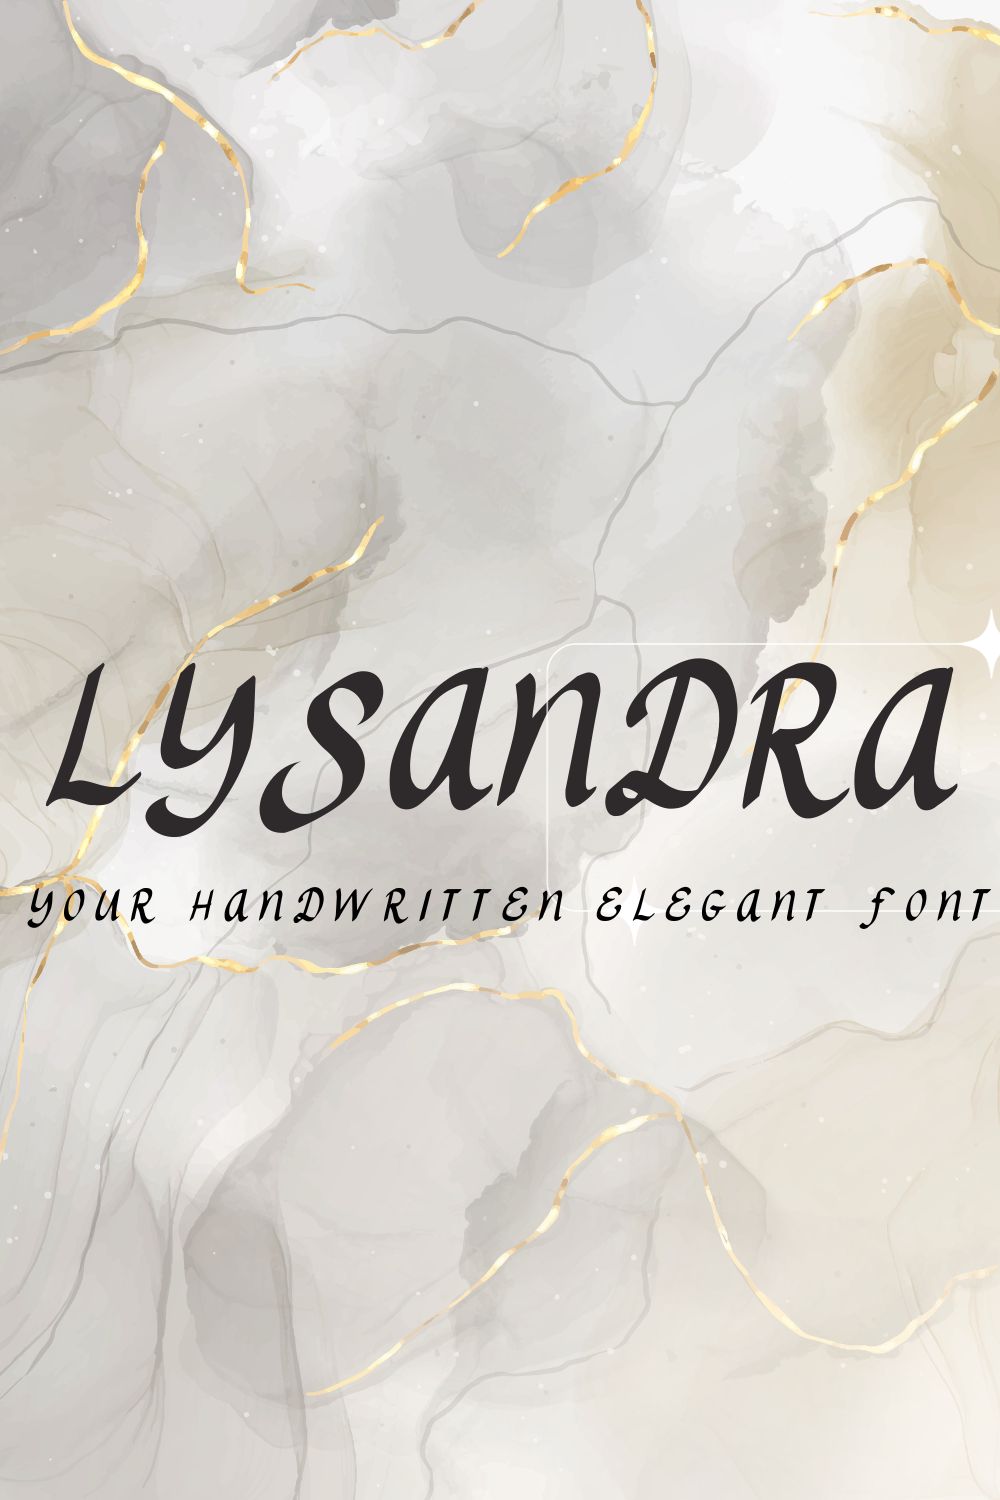 Lysandra Handwritten Font pinterest preview image.